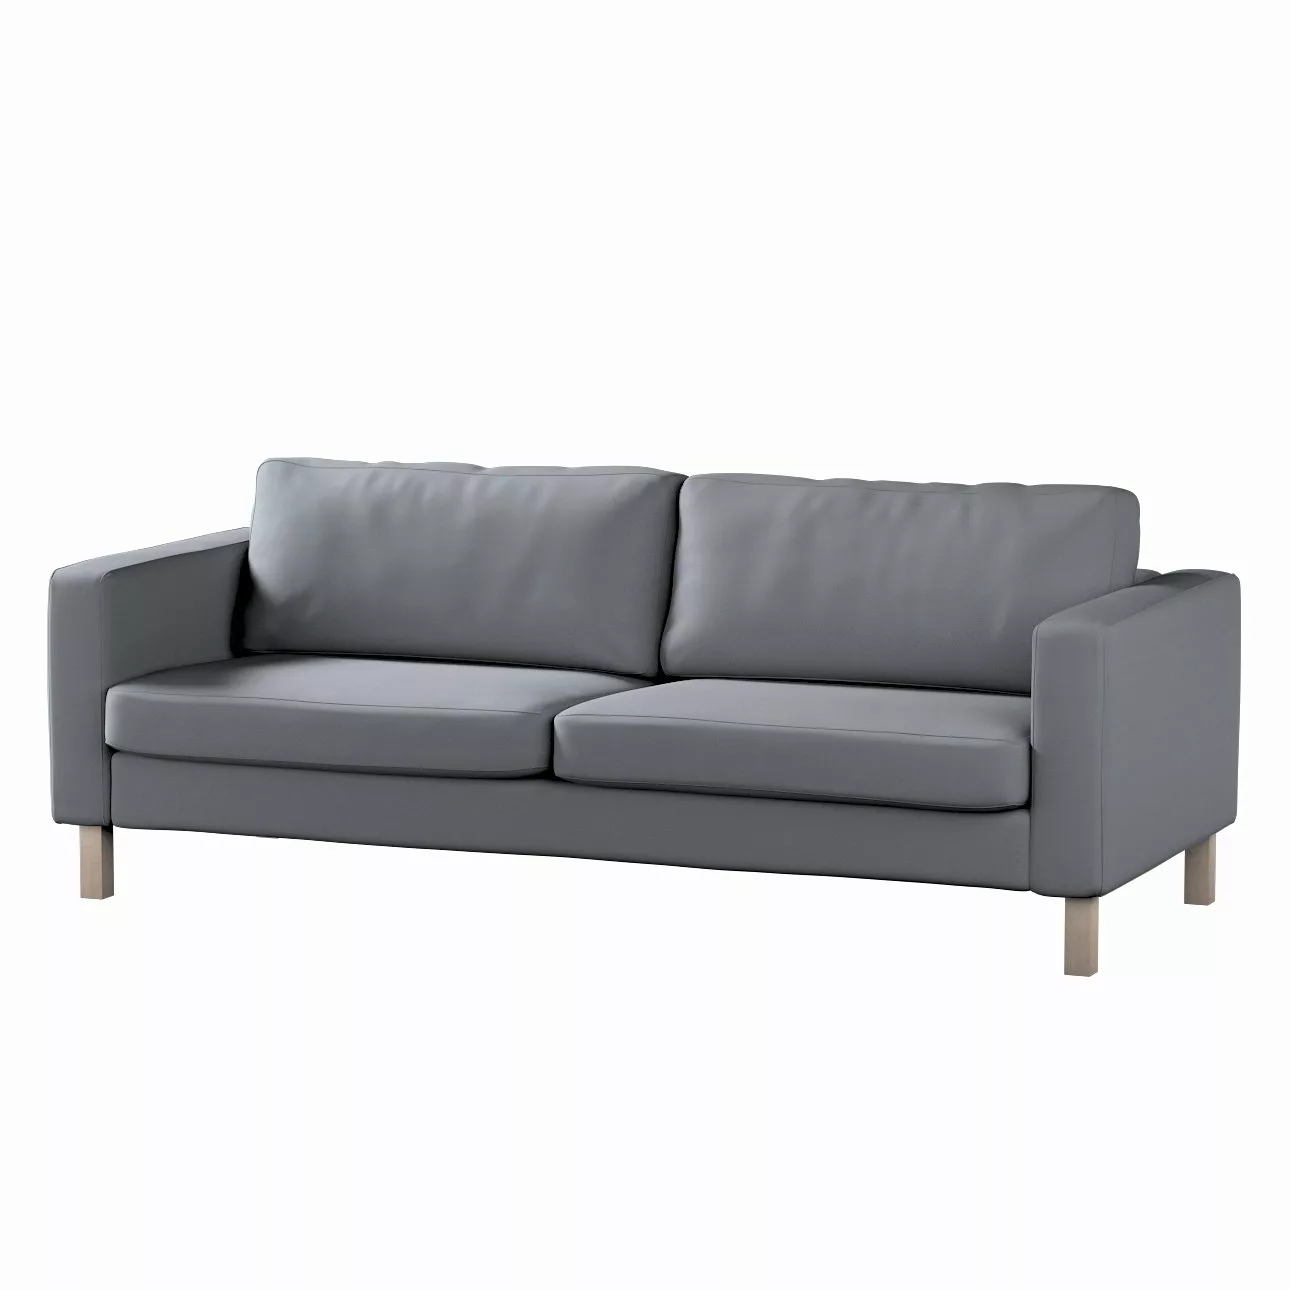 Bezug für Karlstad 3-Sitzer Sofa nicht ausklappbar, kurz, silbergrau, Bezug günstig online kaufen